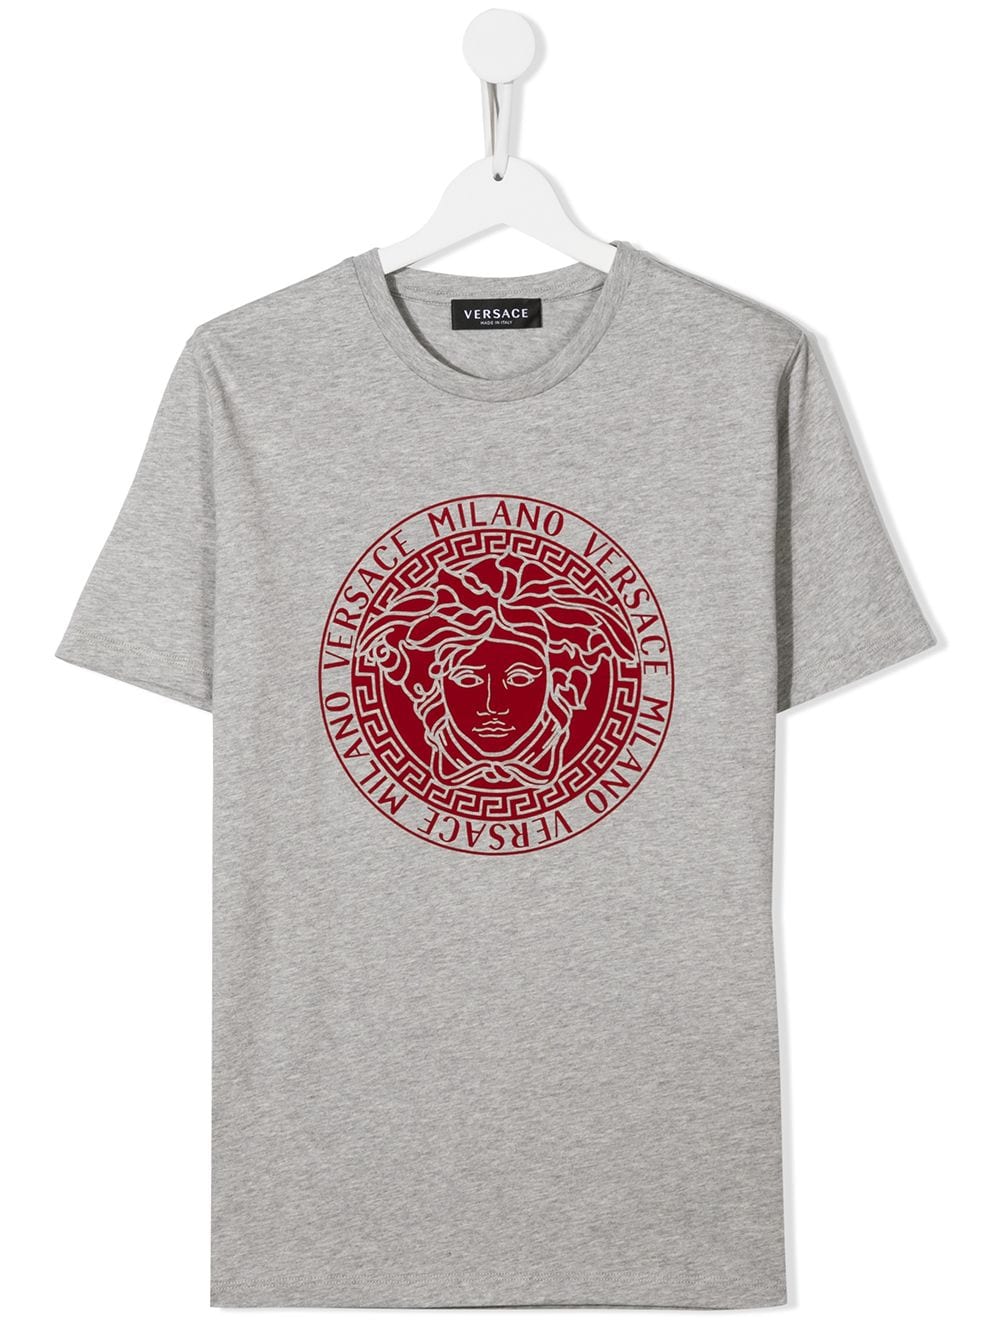 Image 1 of Versace Kids TEEN Medusa logo cotton T-shirt